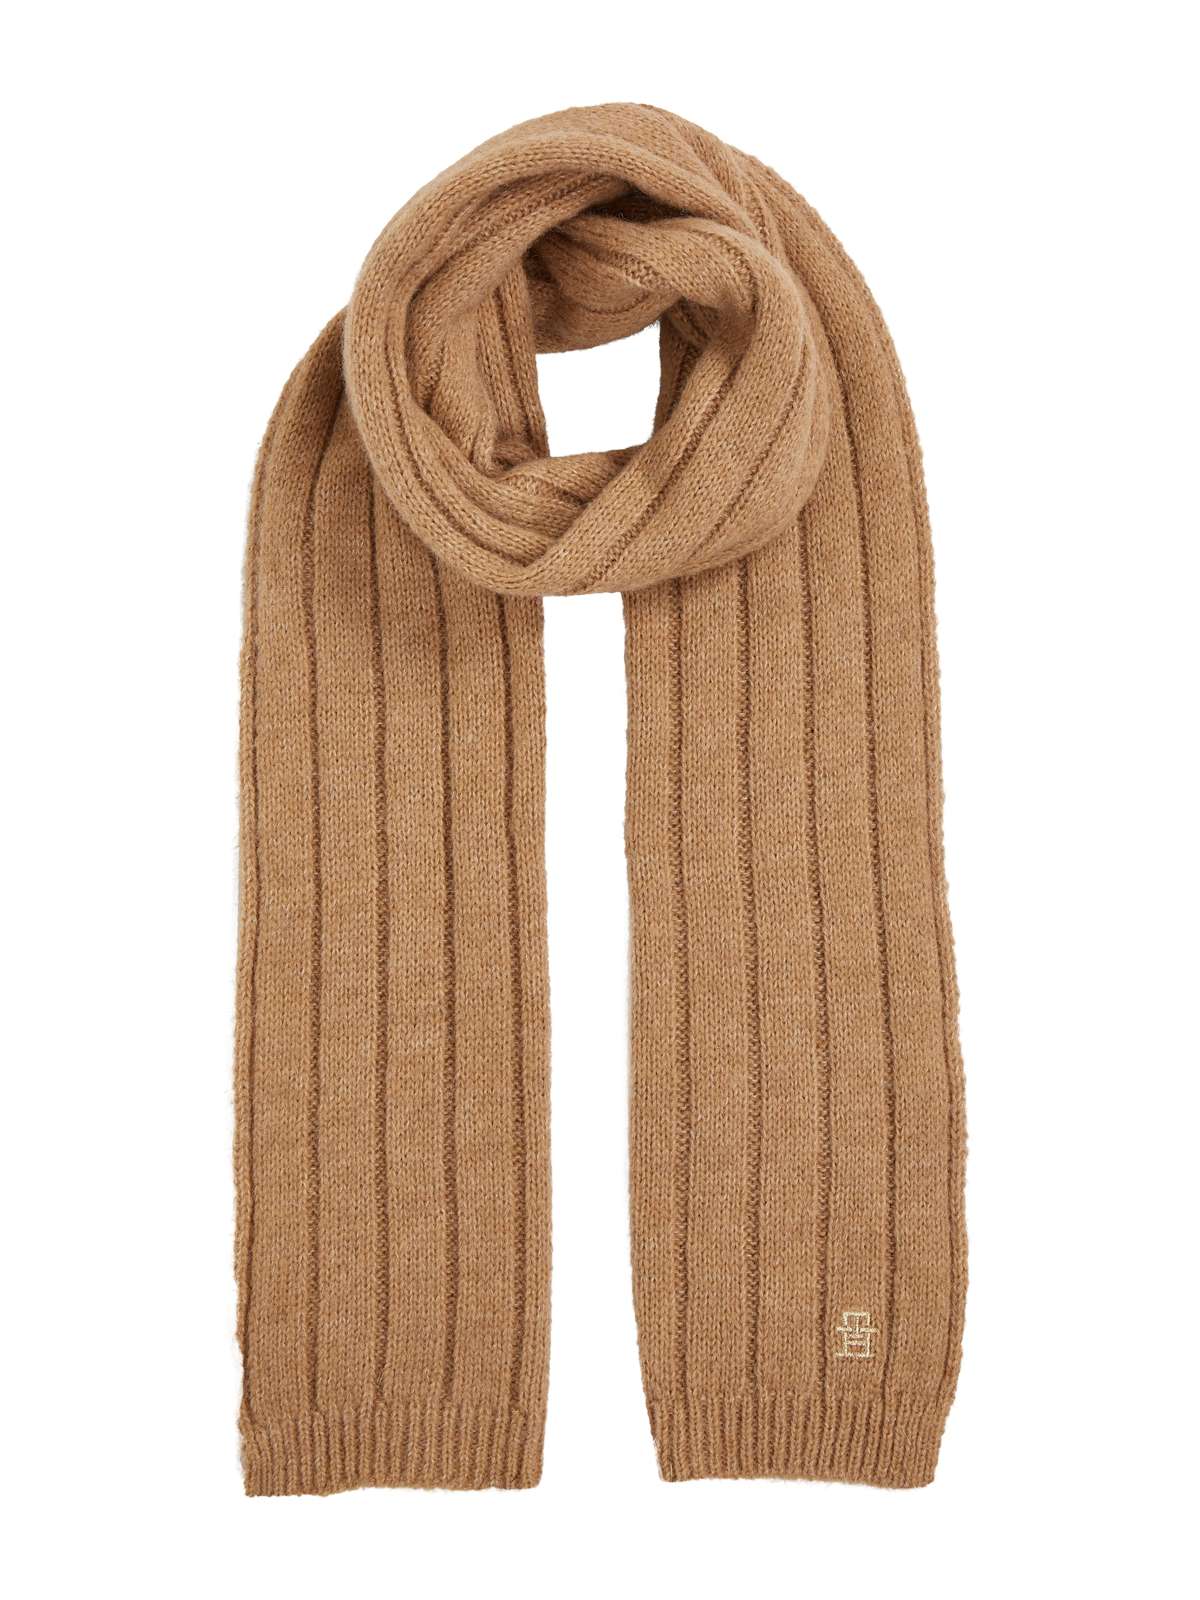 Шарф вязанной вязки, шарф вязанной резинкой с монограммой.